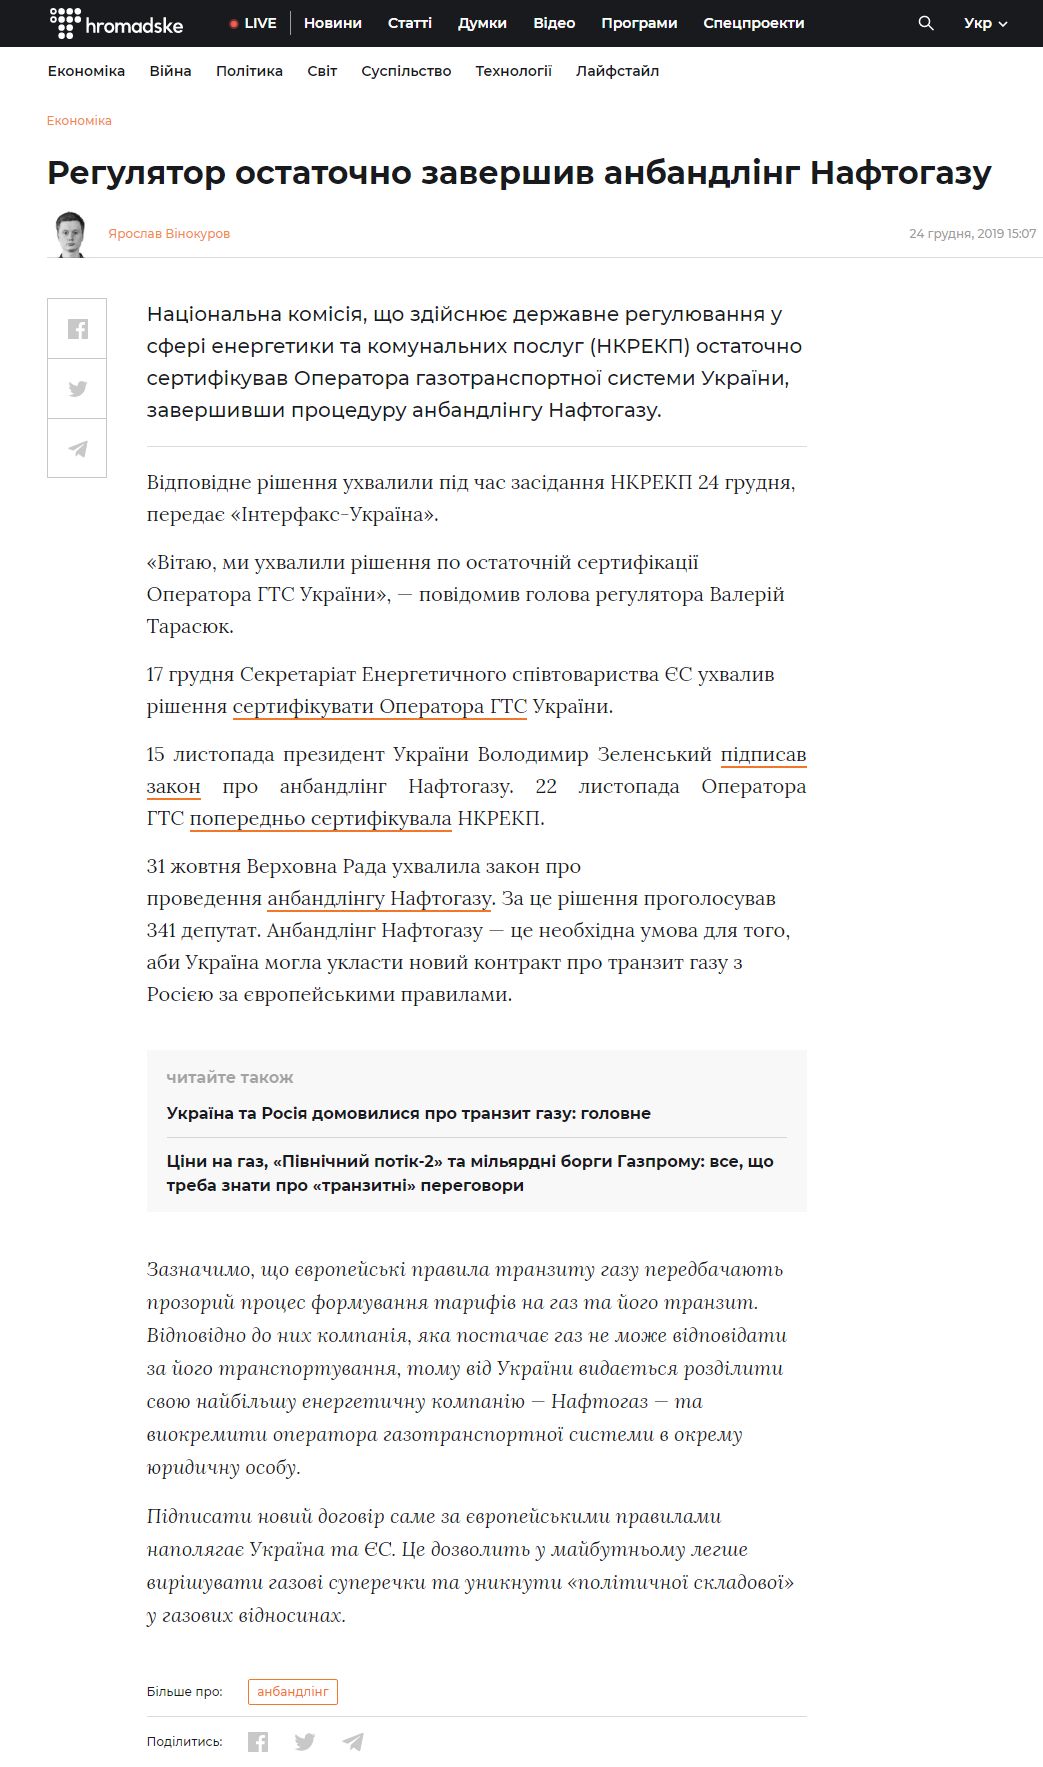 https://hromadske.ua/posts/regulyator-ostatochno-zavershiv-anbandling-naftogazu